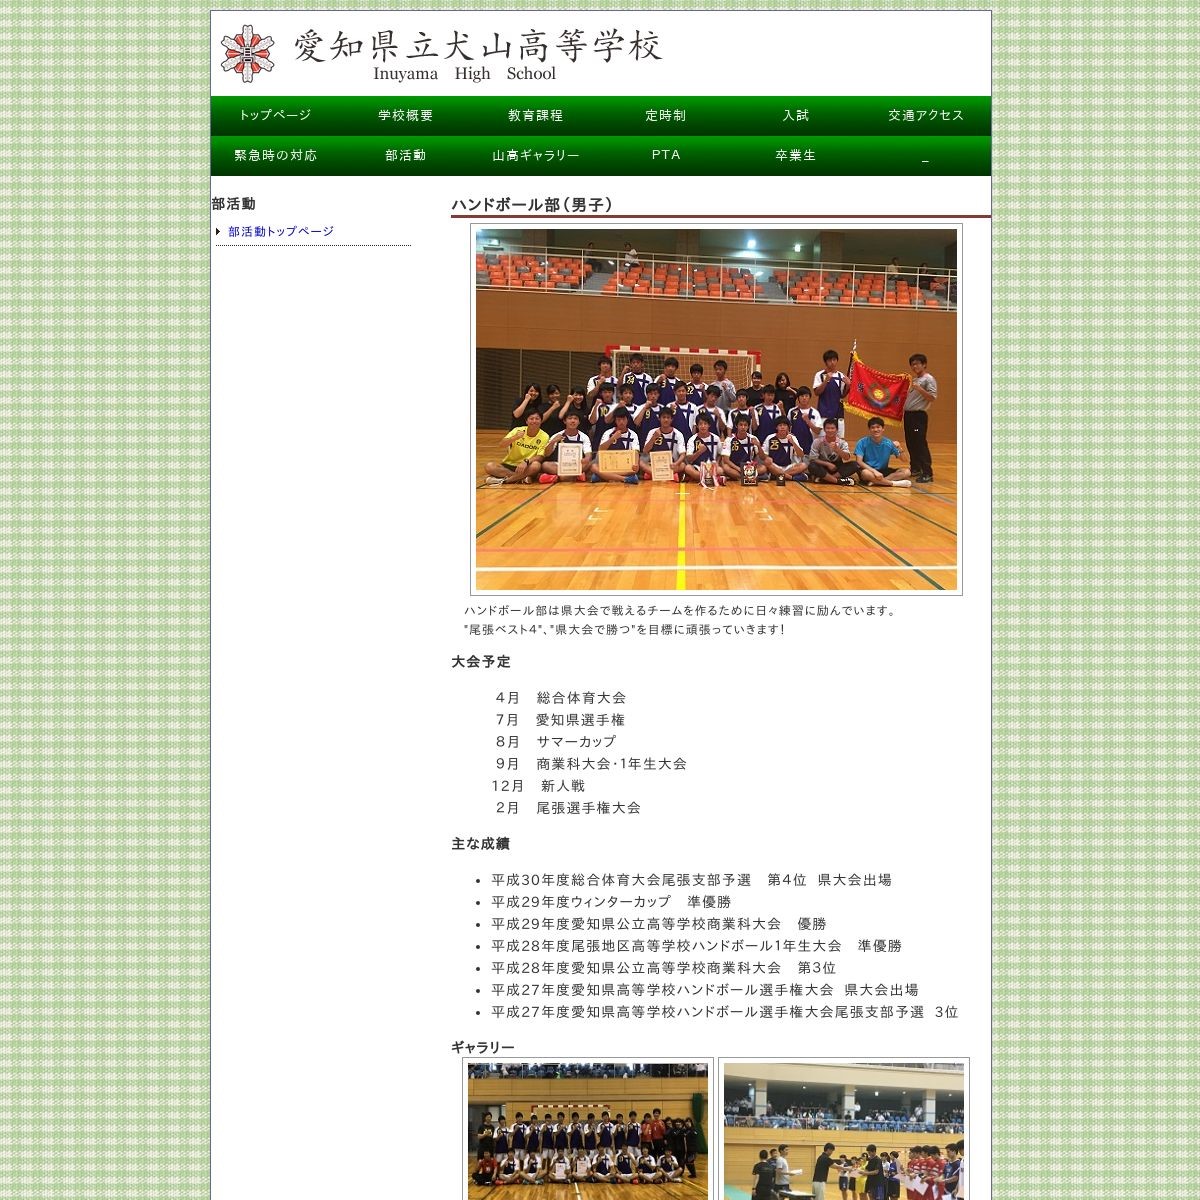 愛知県立犬山高等学校